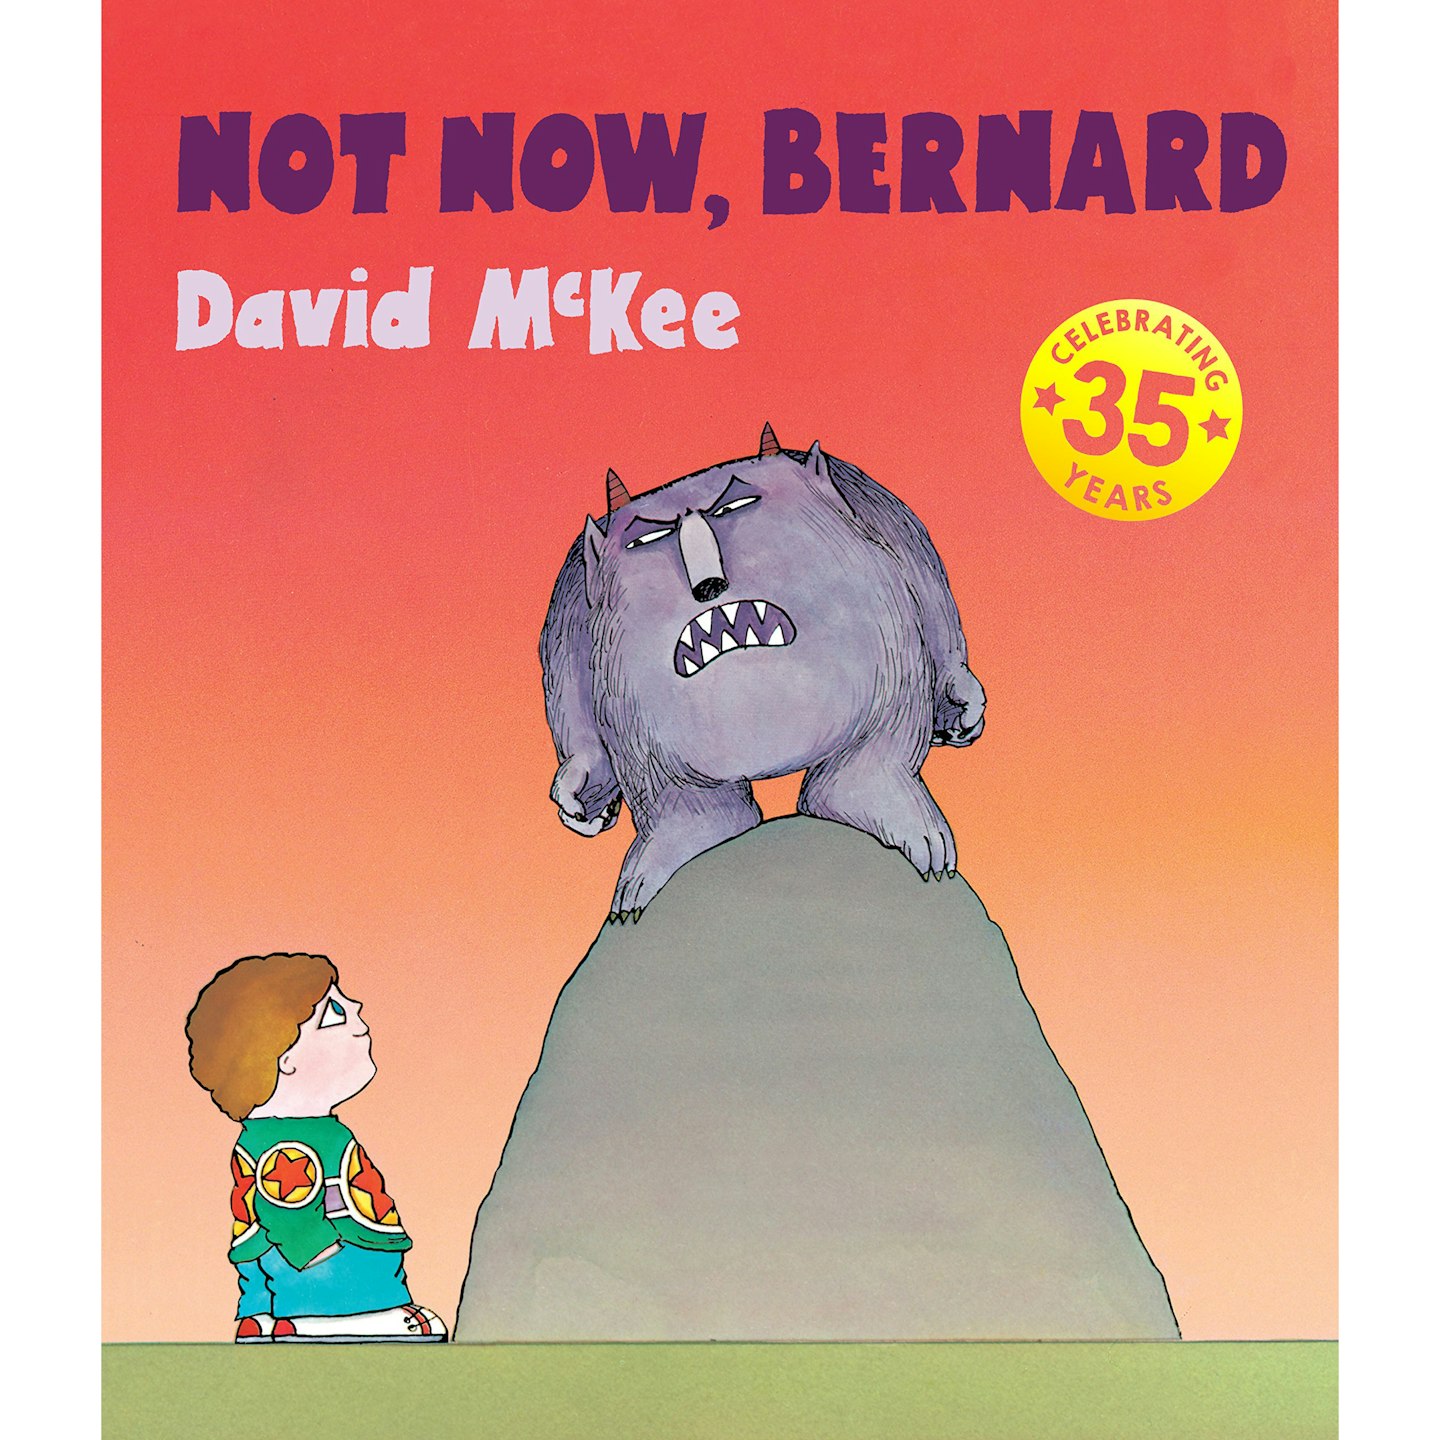 Not Now, Bernard by David McKee